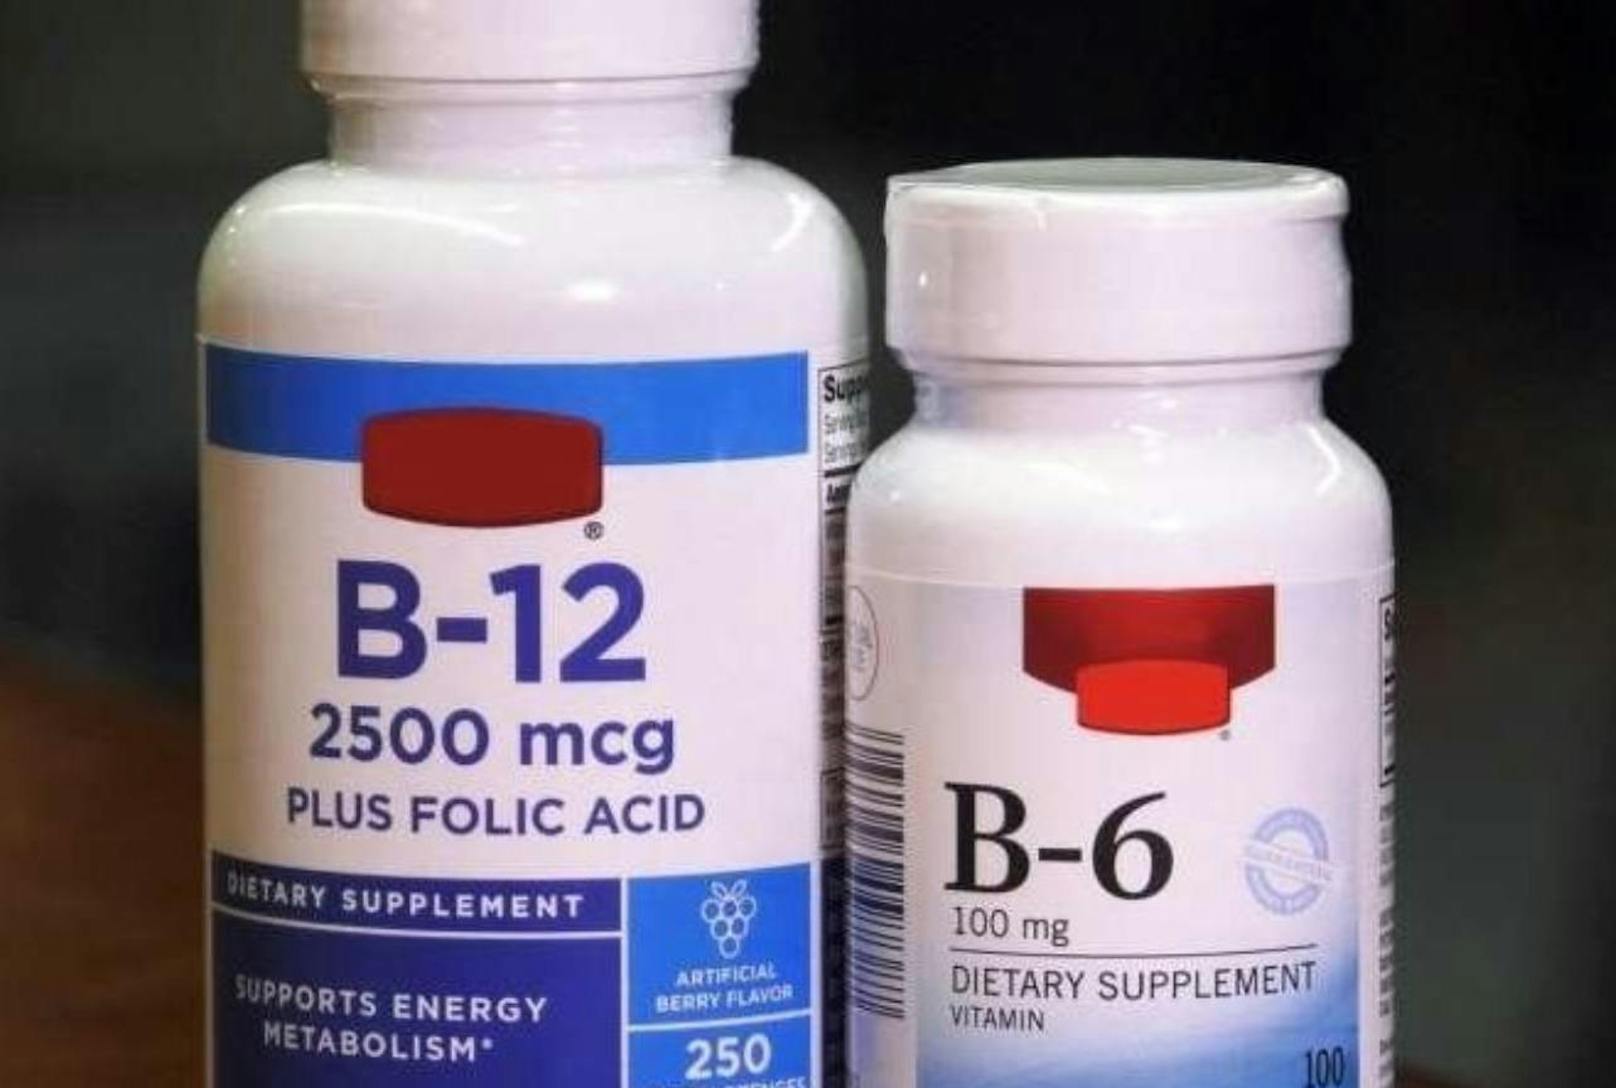 Mangelerscheinungen verhindern, die Körperabwehr stärken, Krankheiten vorbeugen: Wer Vitamintabletten einnimmt, will sich etwas Gutes tun. Doch Präparate mit hochdosiertem Vitamin B6 und B12 bewirken bei Männern offenbar das Gegenteil.